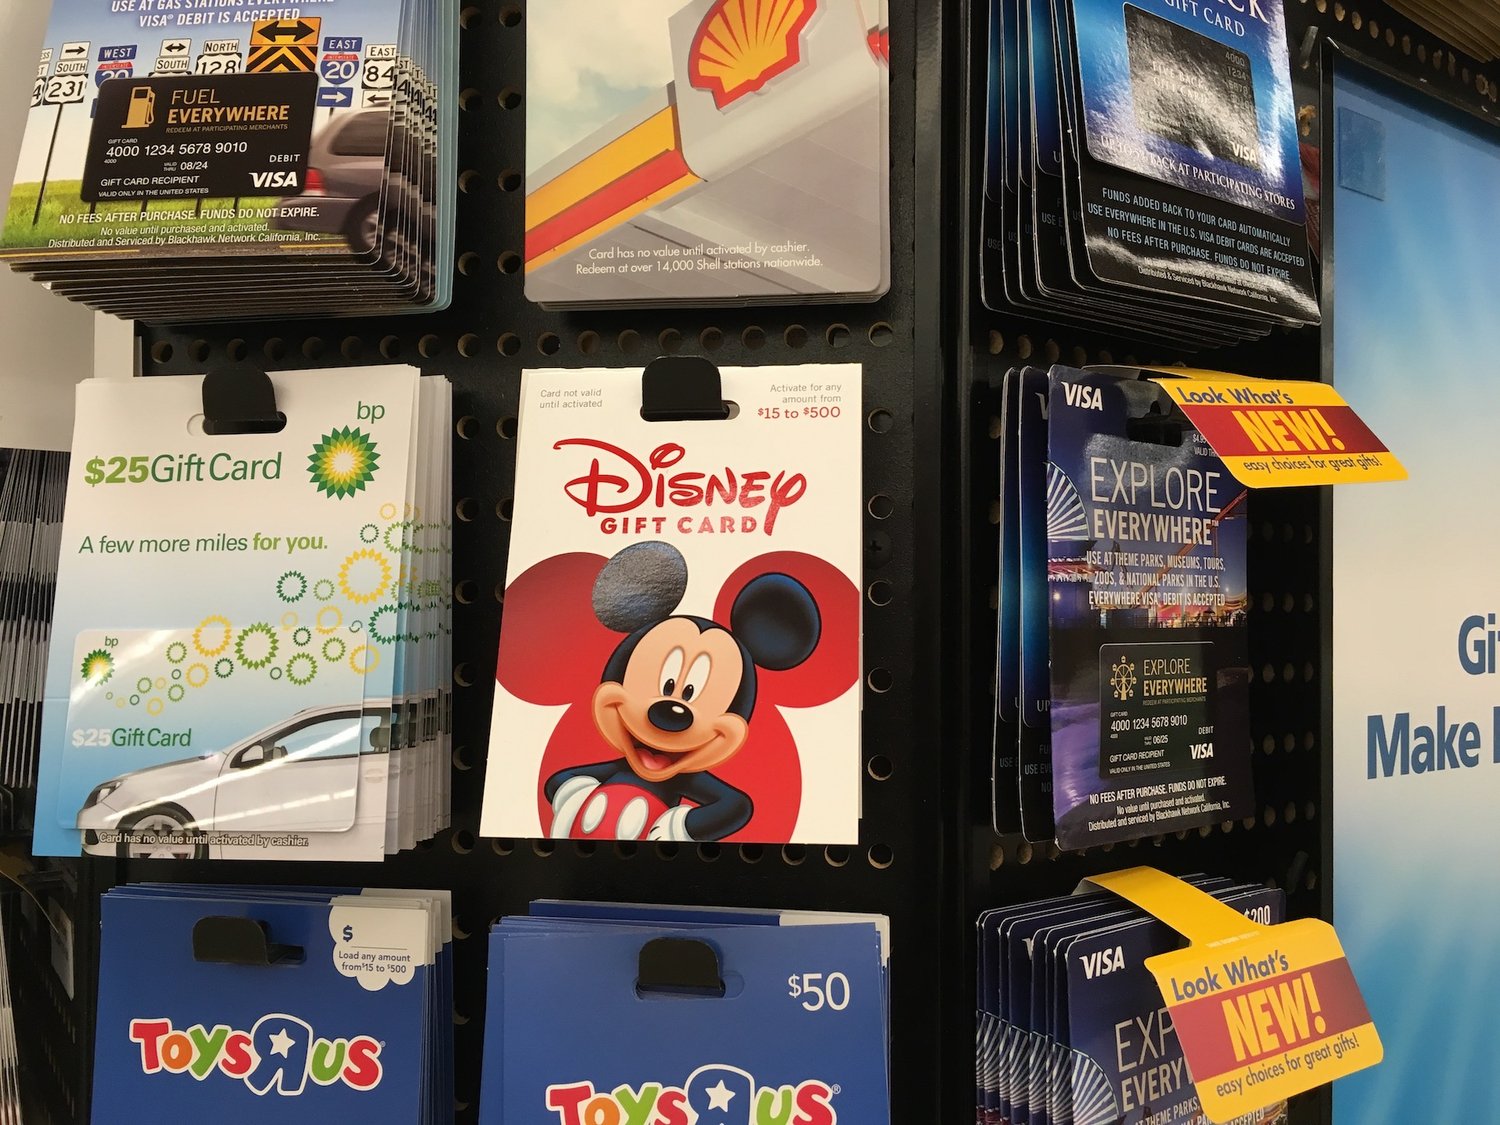 Aprovechar al máximo las tarjetas de regalo de Disney con descuento